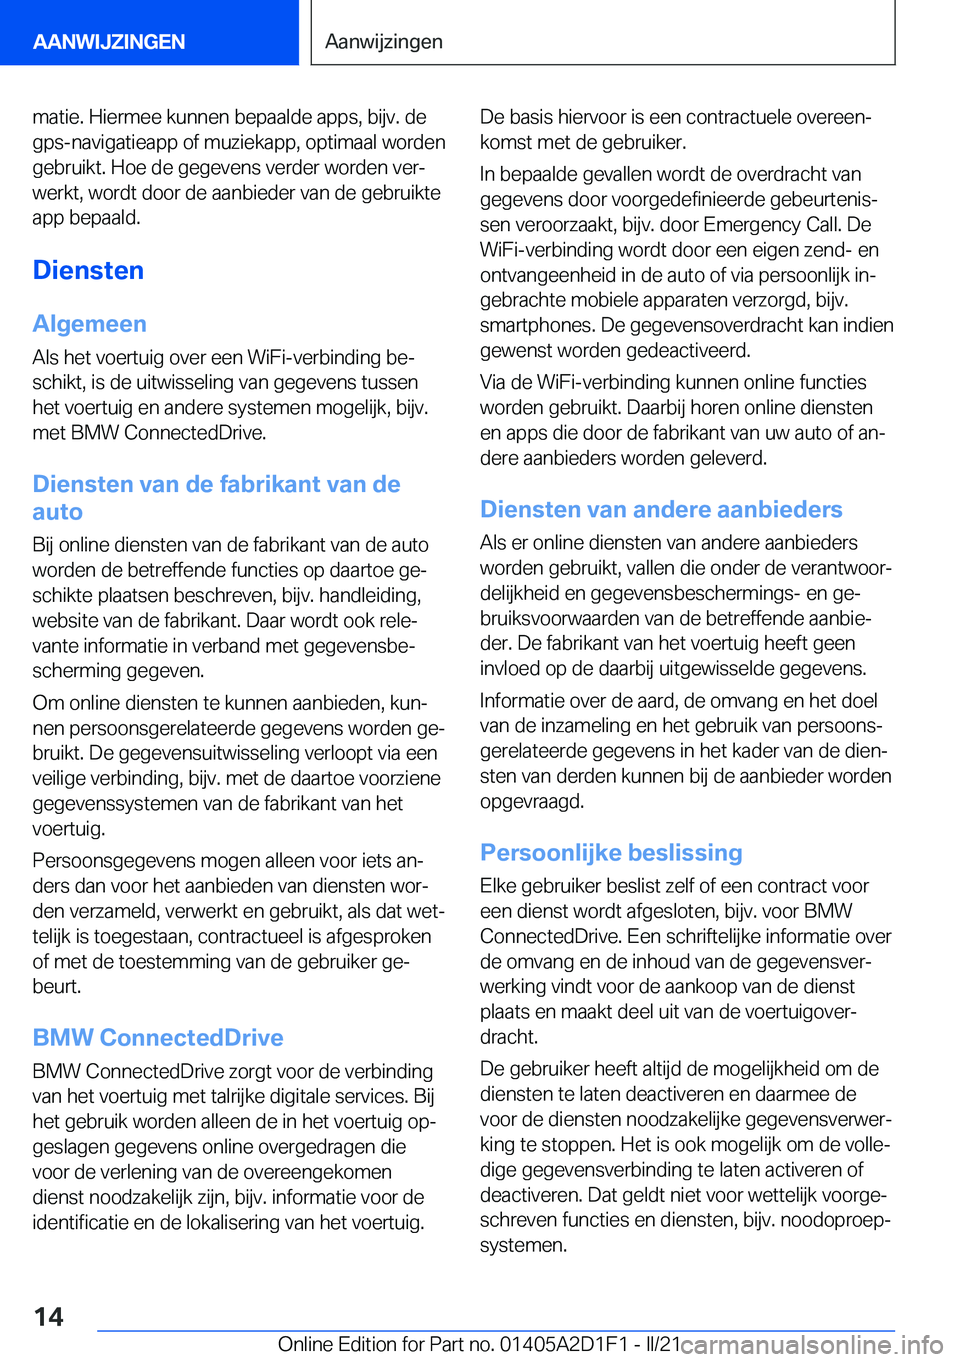 BMW X6 M 2021  Instructieboekjes (in Dutch) �m�a�t�i�e�.��H�i�e�r�m�e�e��k�u�n�n�e�n��b�e�p�a�a�l�d�e��a�p�p�s�,��b�i�j�v�.��d�e
�g�p�s�-�n�a�v�i�g�a�t�i�e�a�p�p��o�f��m�u�z�i�e�k�a�p�p�,��o�p�t�i�m�a�a�l��w�o�r�d�e�n �g�e�b�r�u�i�k�t